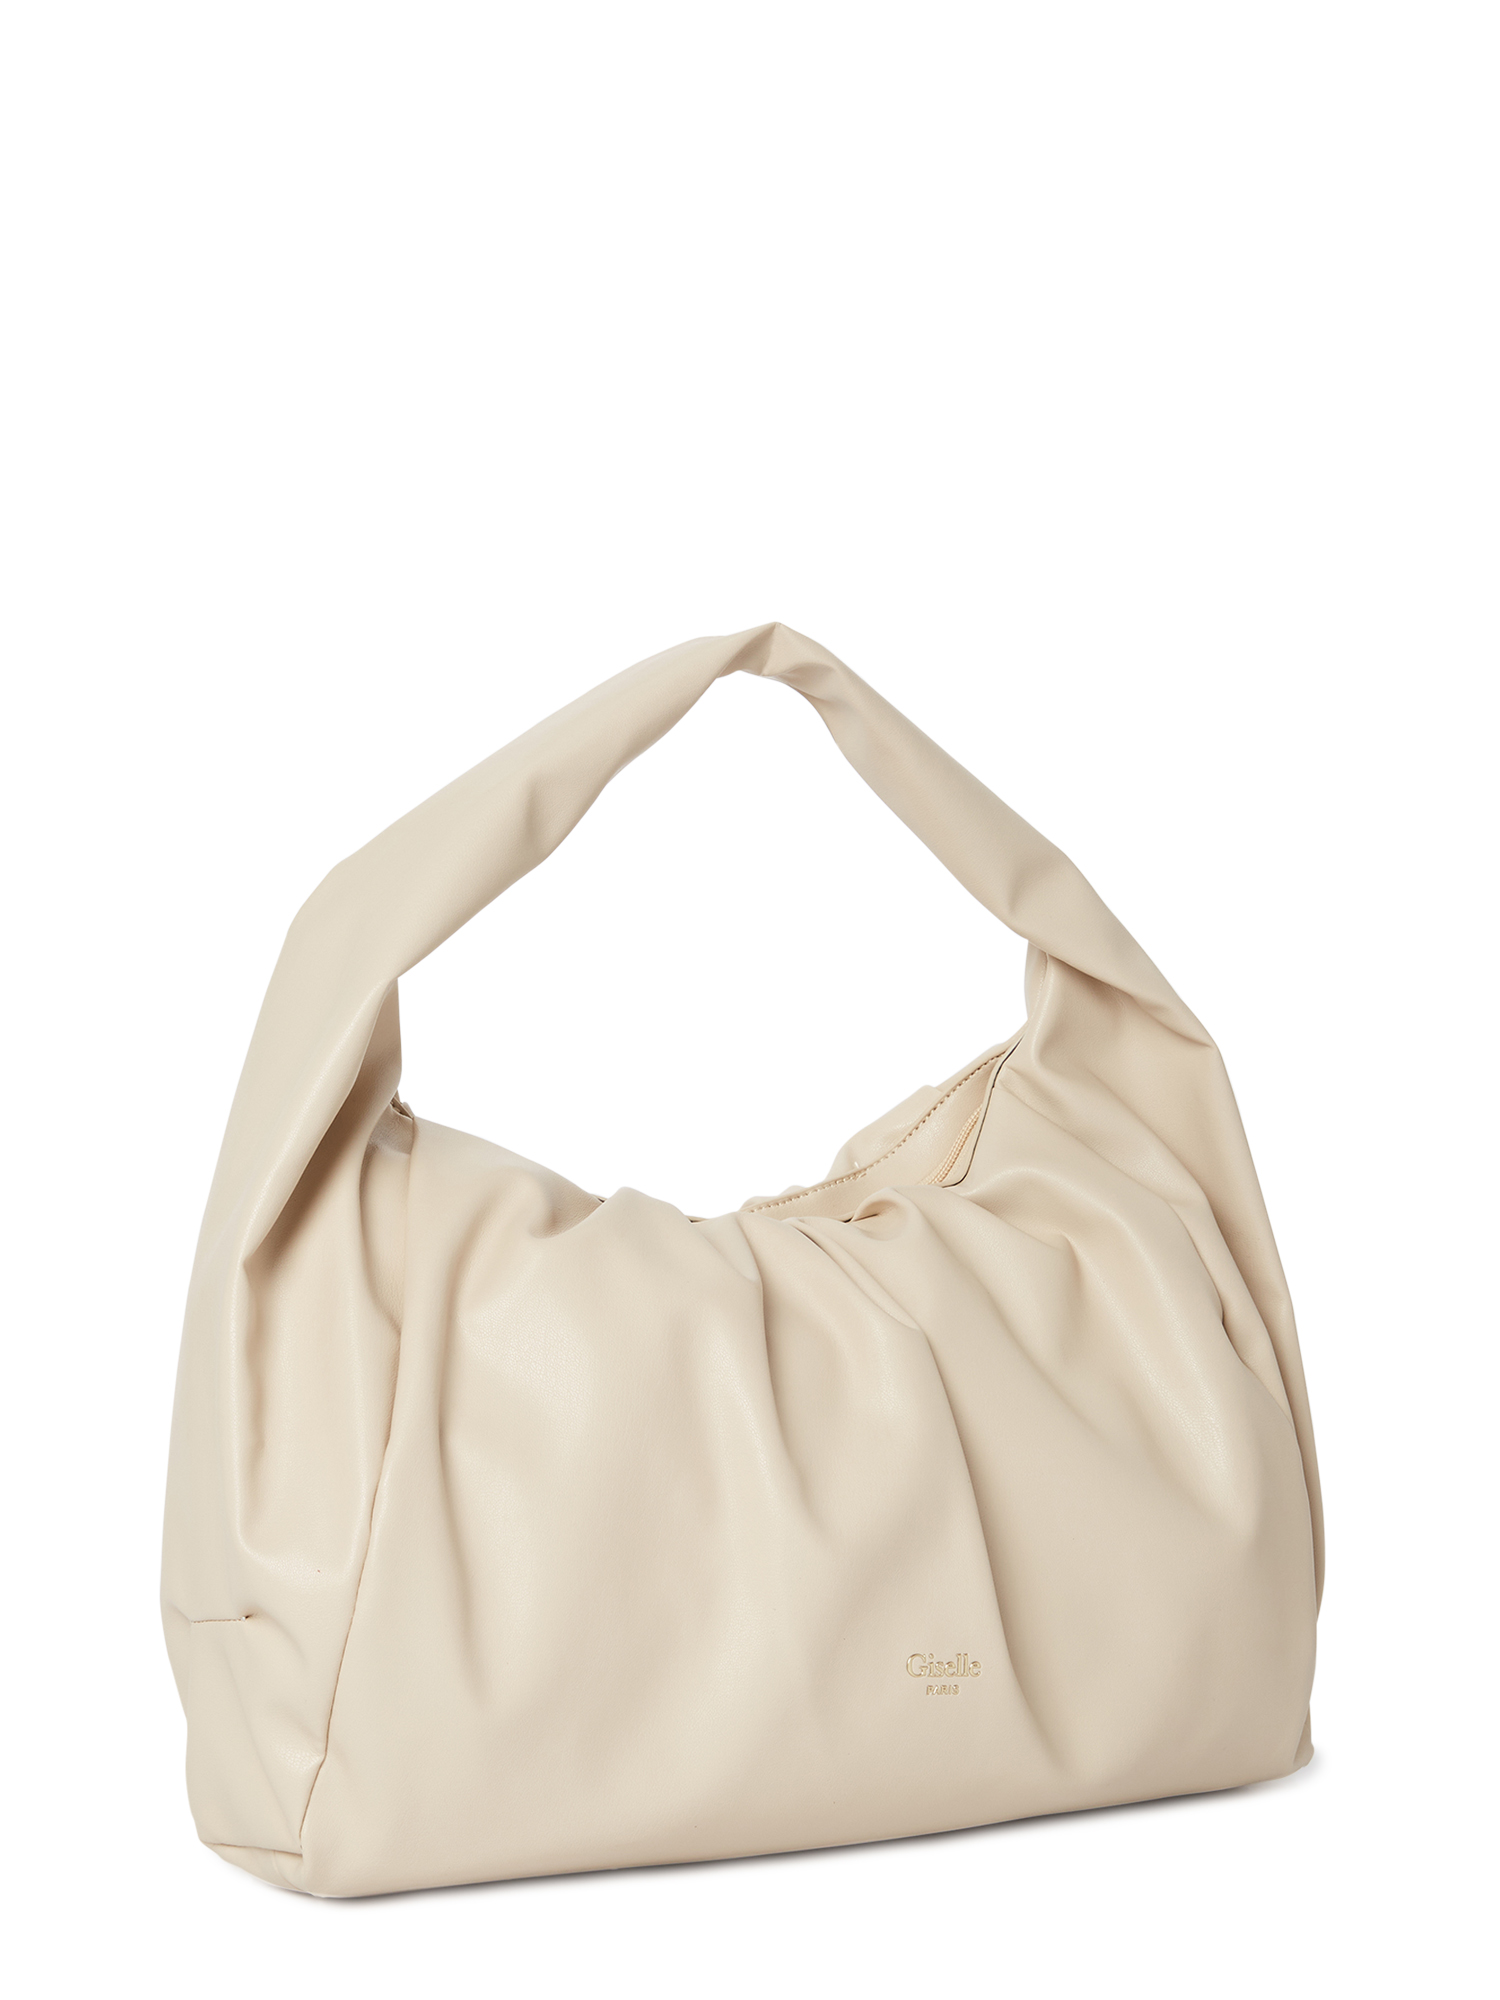 Giselle Paris Women's Adele Vegan Leather Ruched Shoulder Bag - image 2 of 5